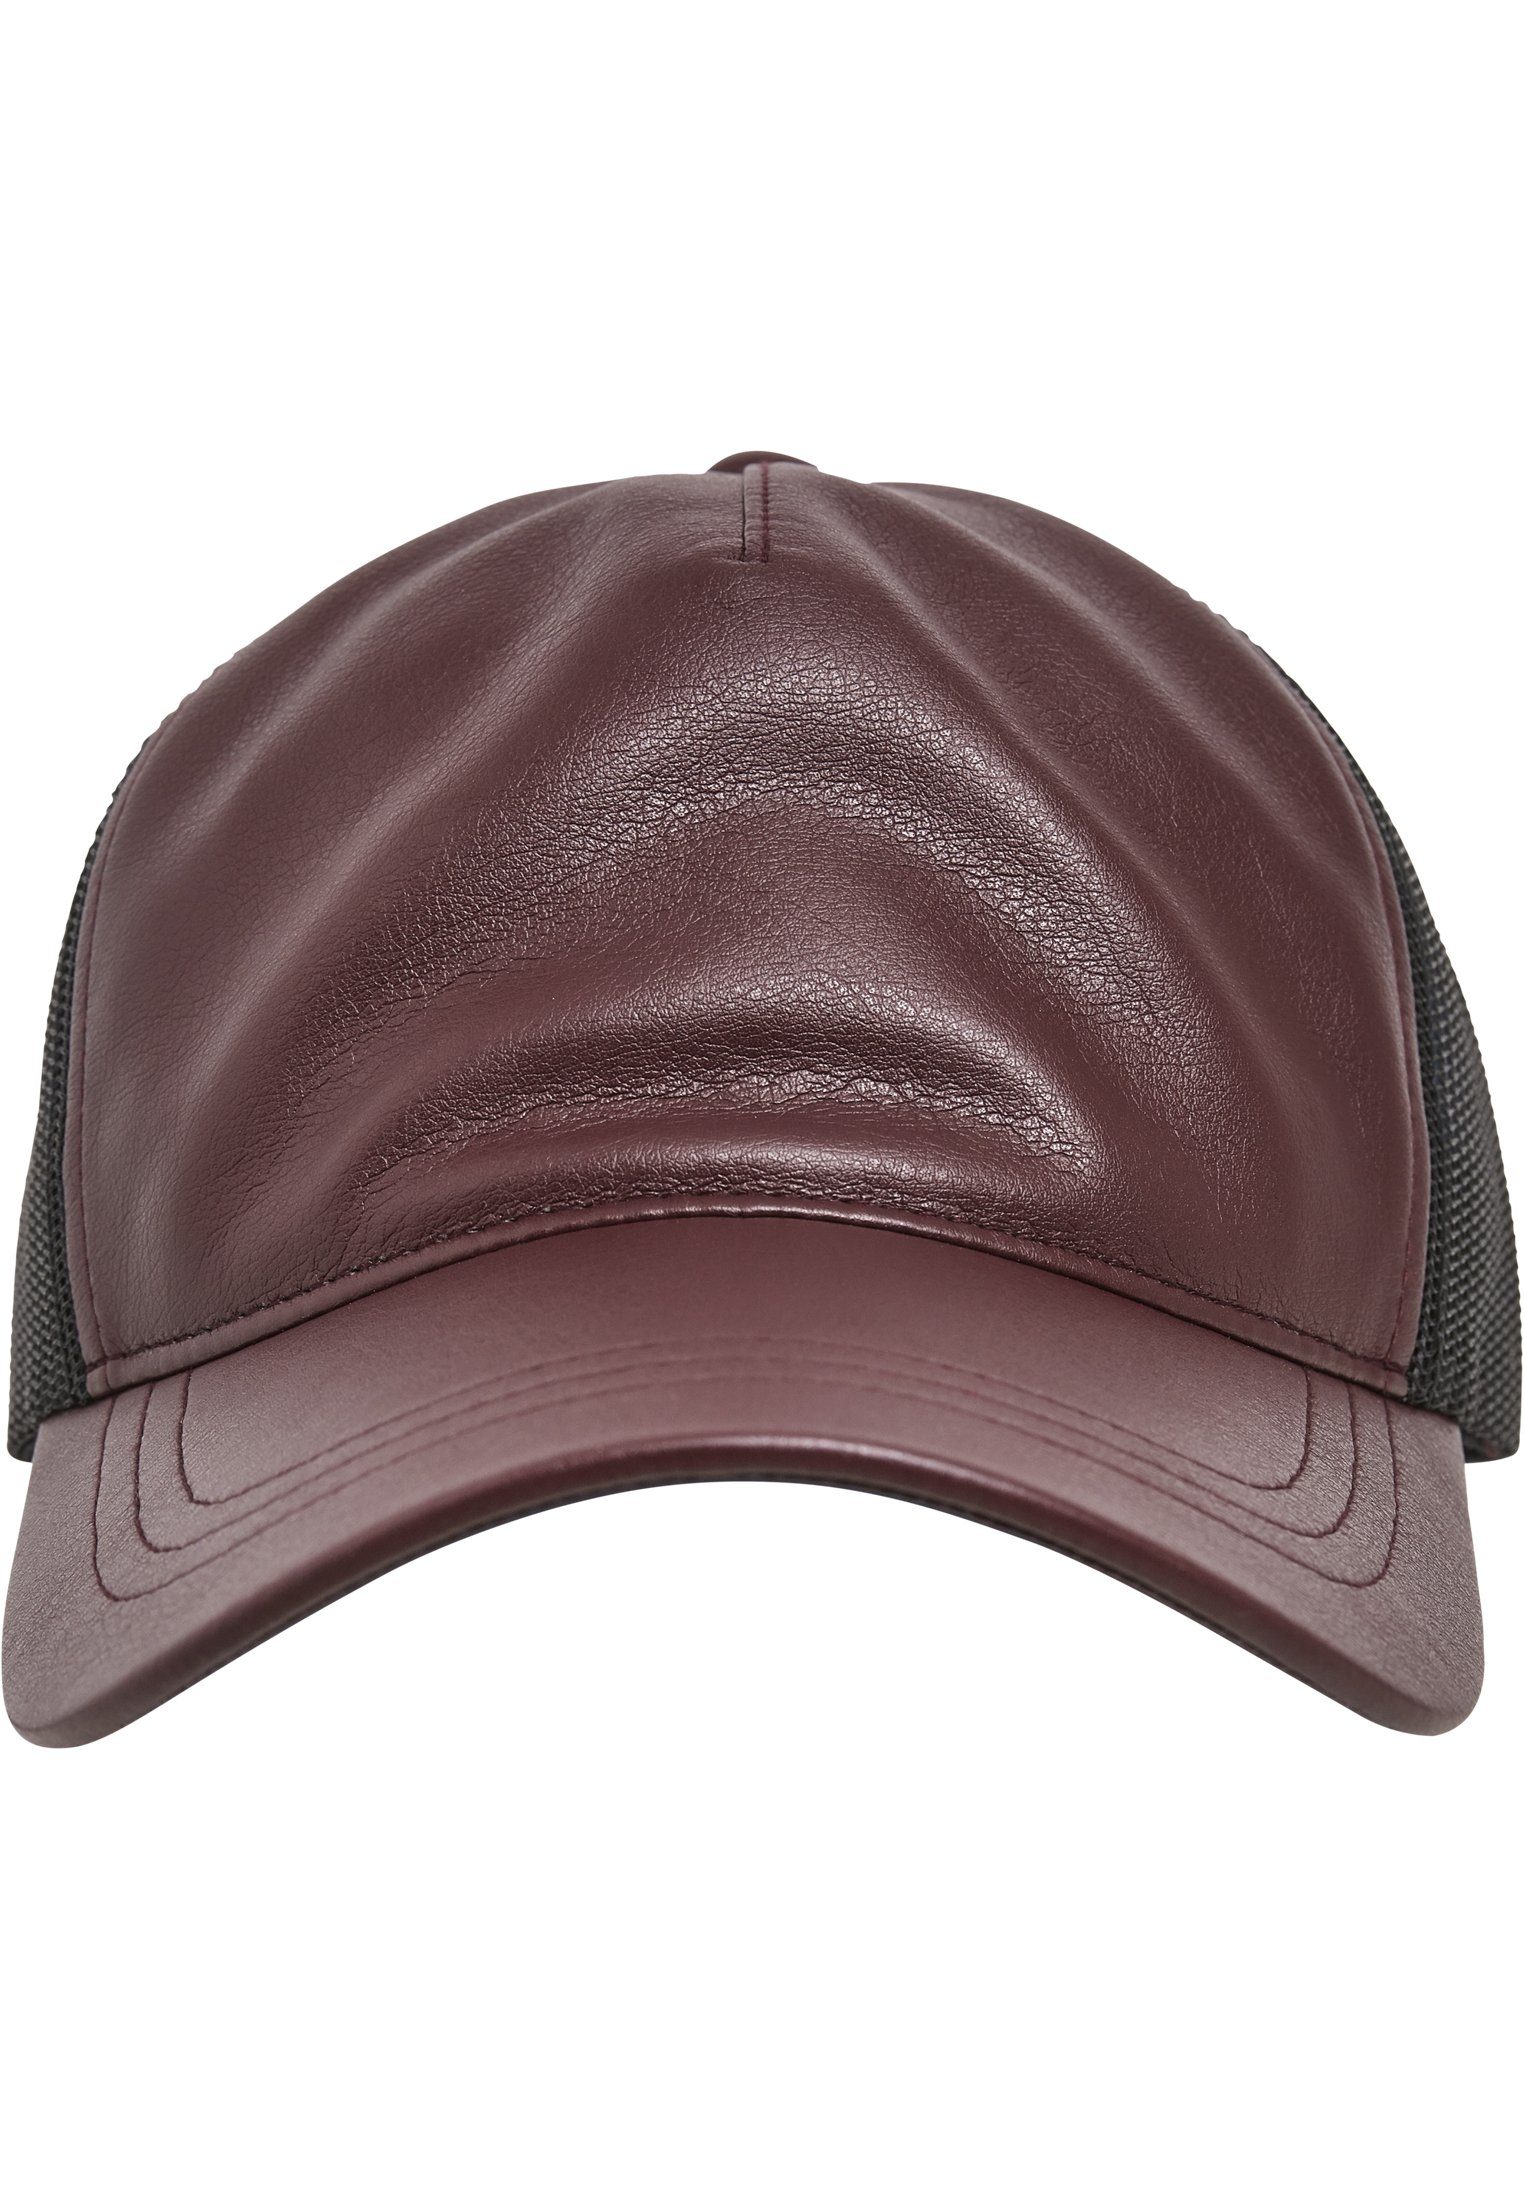 Trucker Flexfit Leather maroon/black Synthetic Cap Trucker Flex